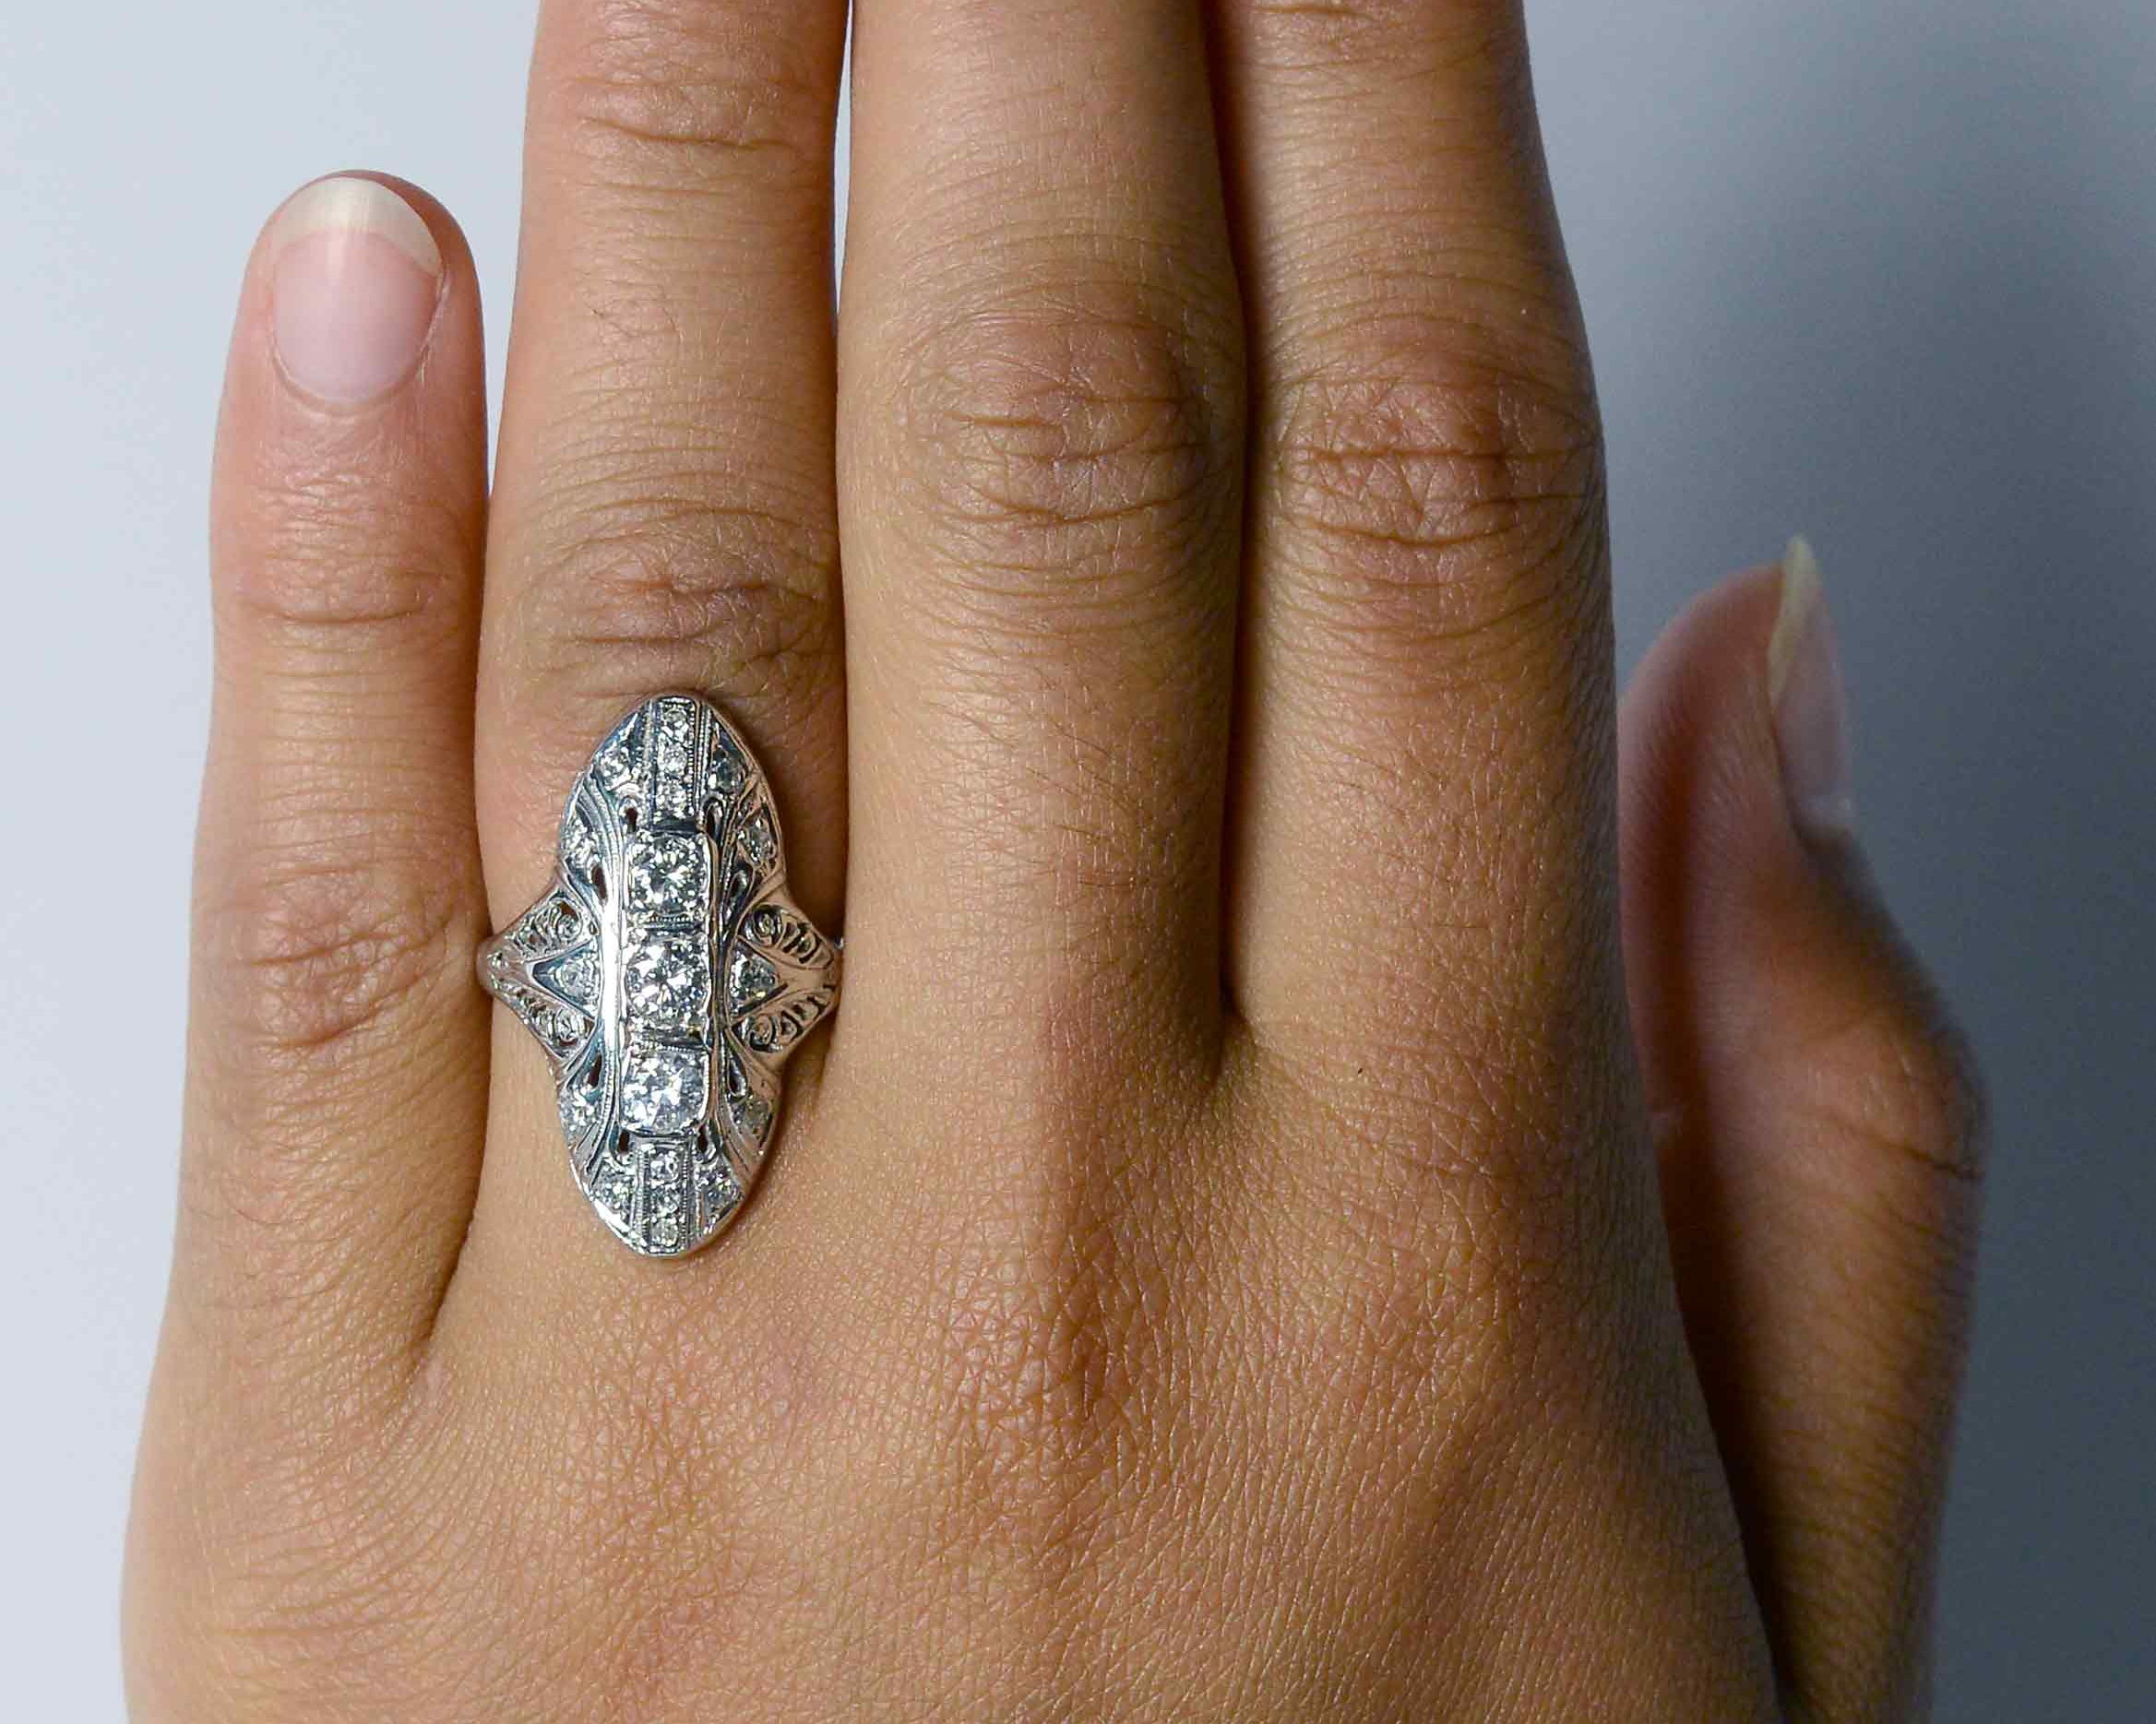 Oval navette diamonds ring.